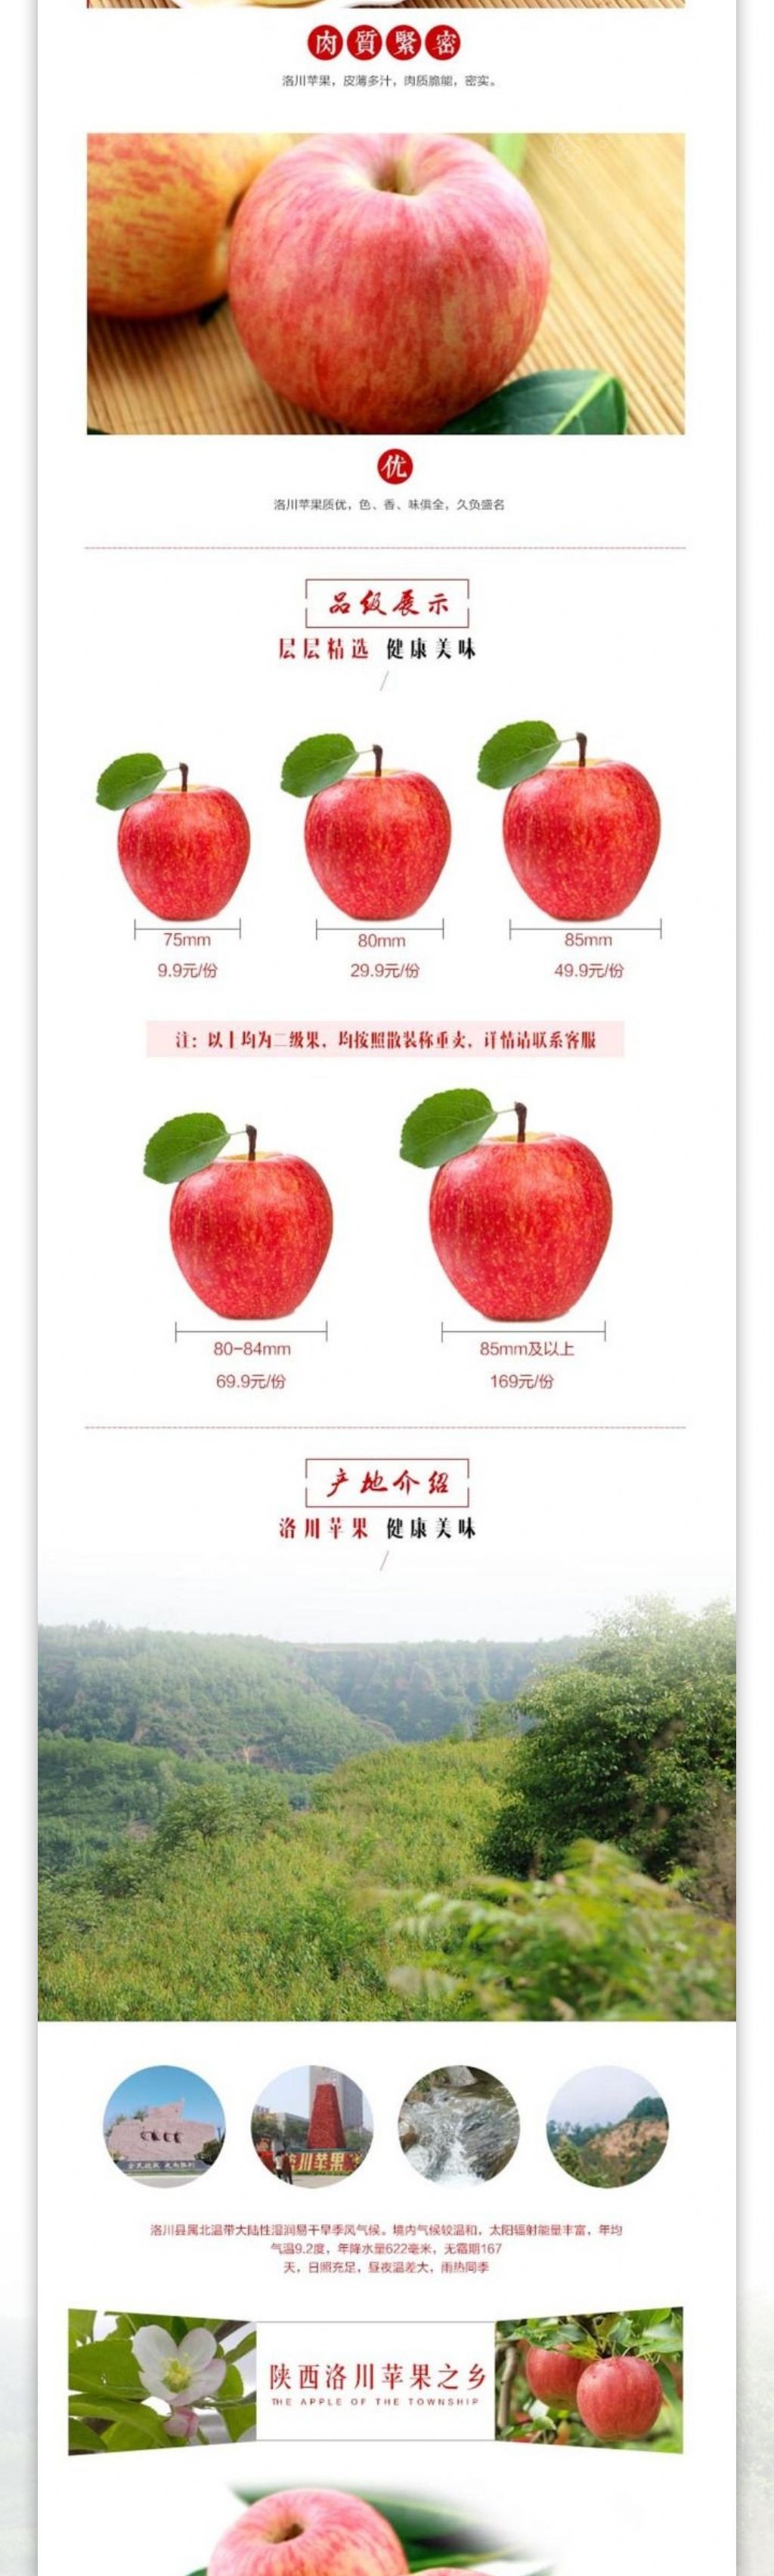 苹果水果描述淘宝详情页图片